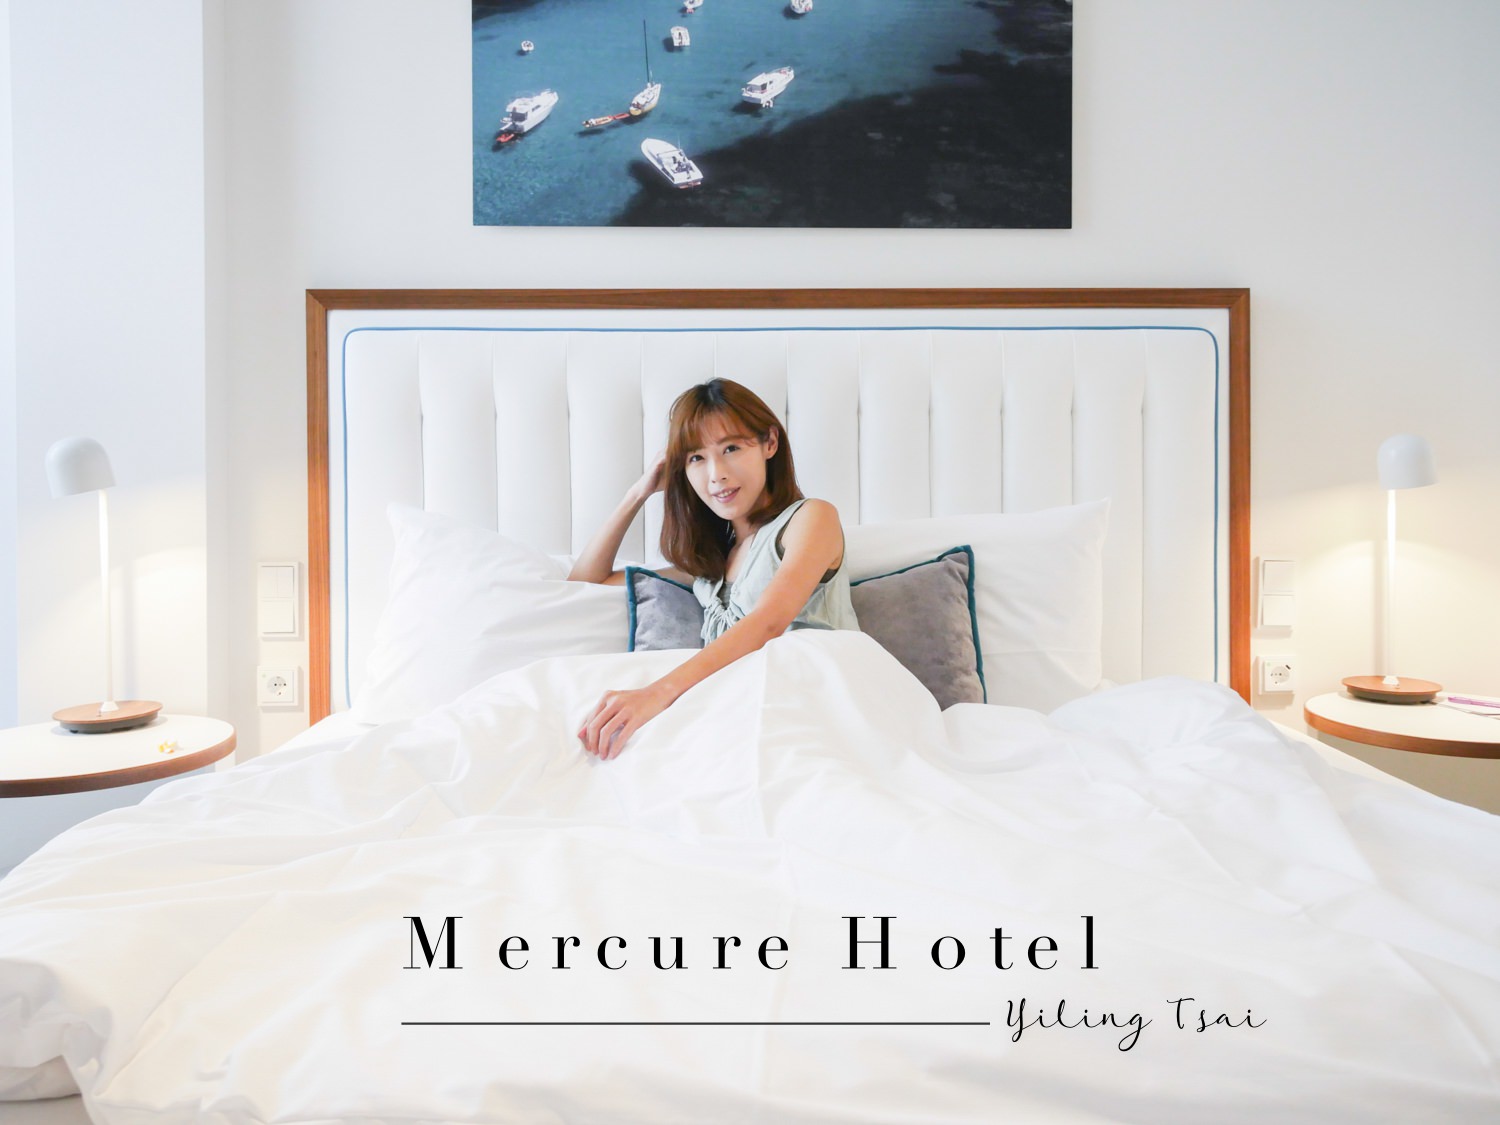 德國柏林住宿推薦 Mercure Hotel MOA Berlin 米特區四星飯店